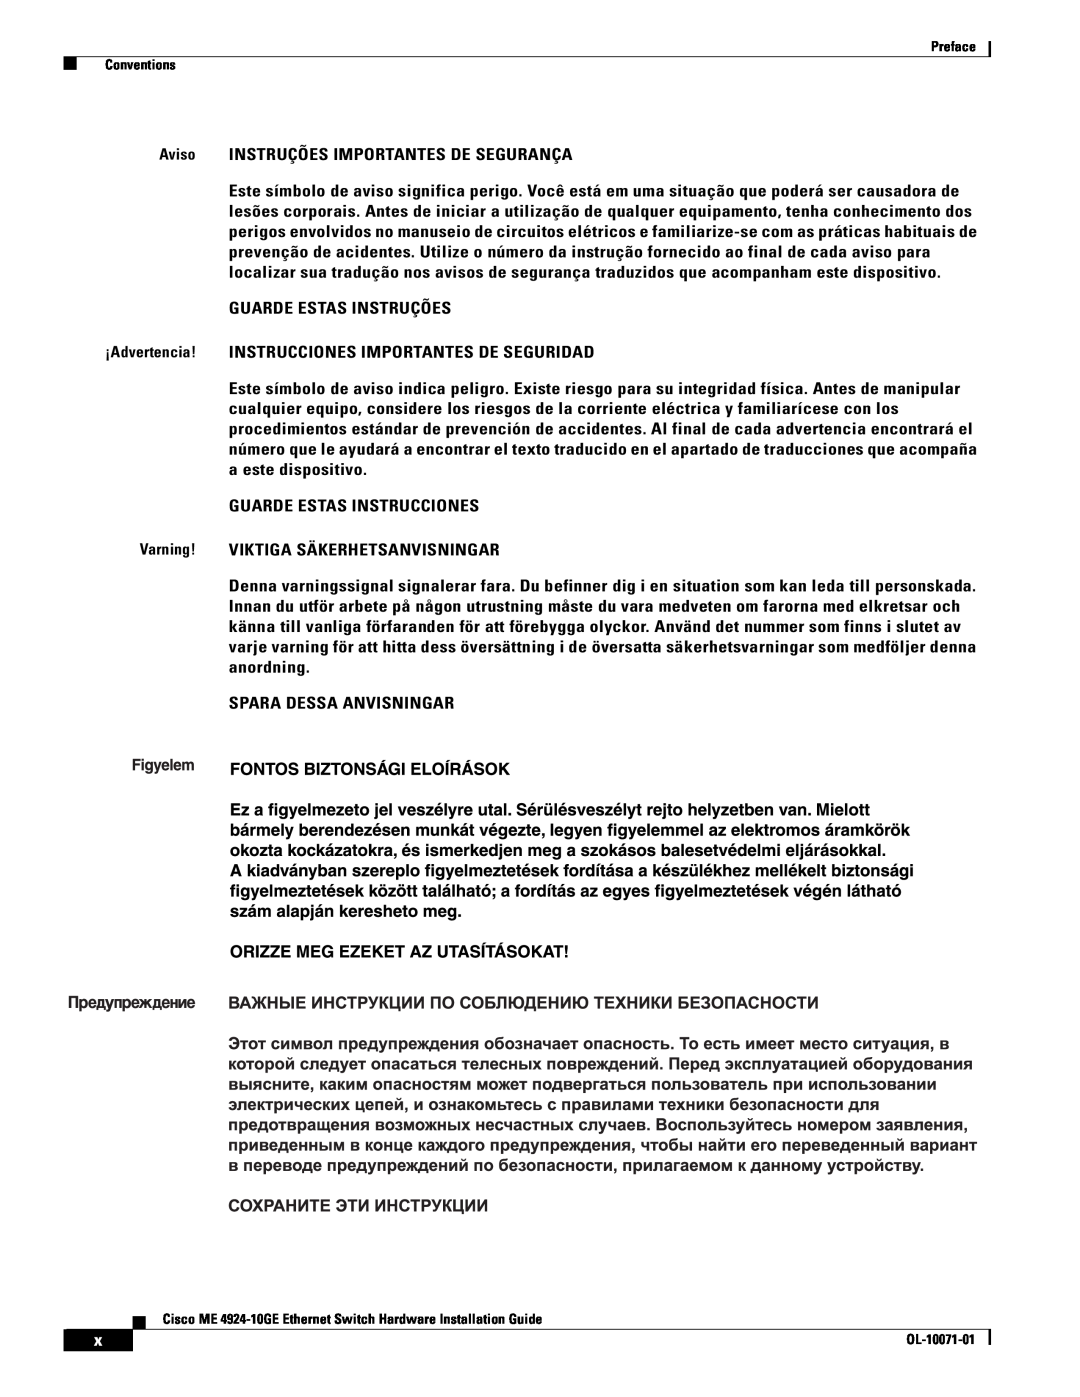 Cisco Systems ME 4924-10GE manual Aviso INSTRUÇÕES IMPORTANTES DE SEGURANÇA 